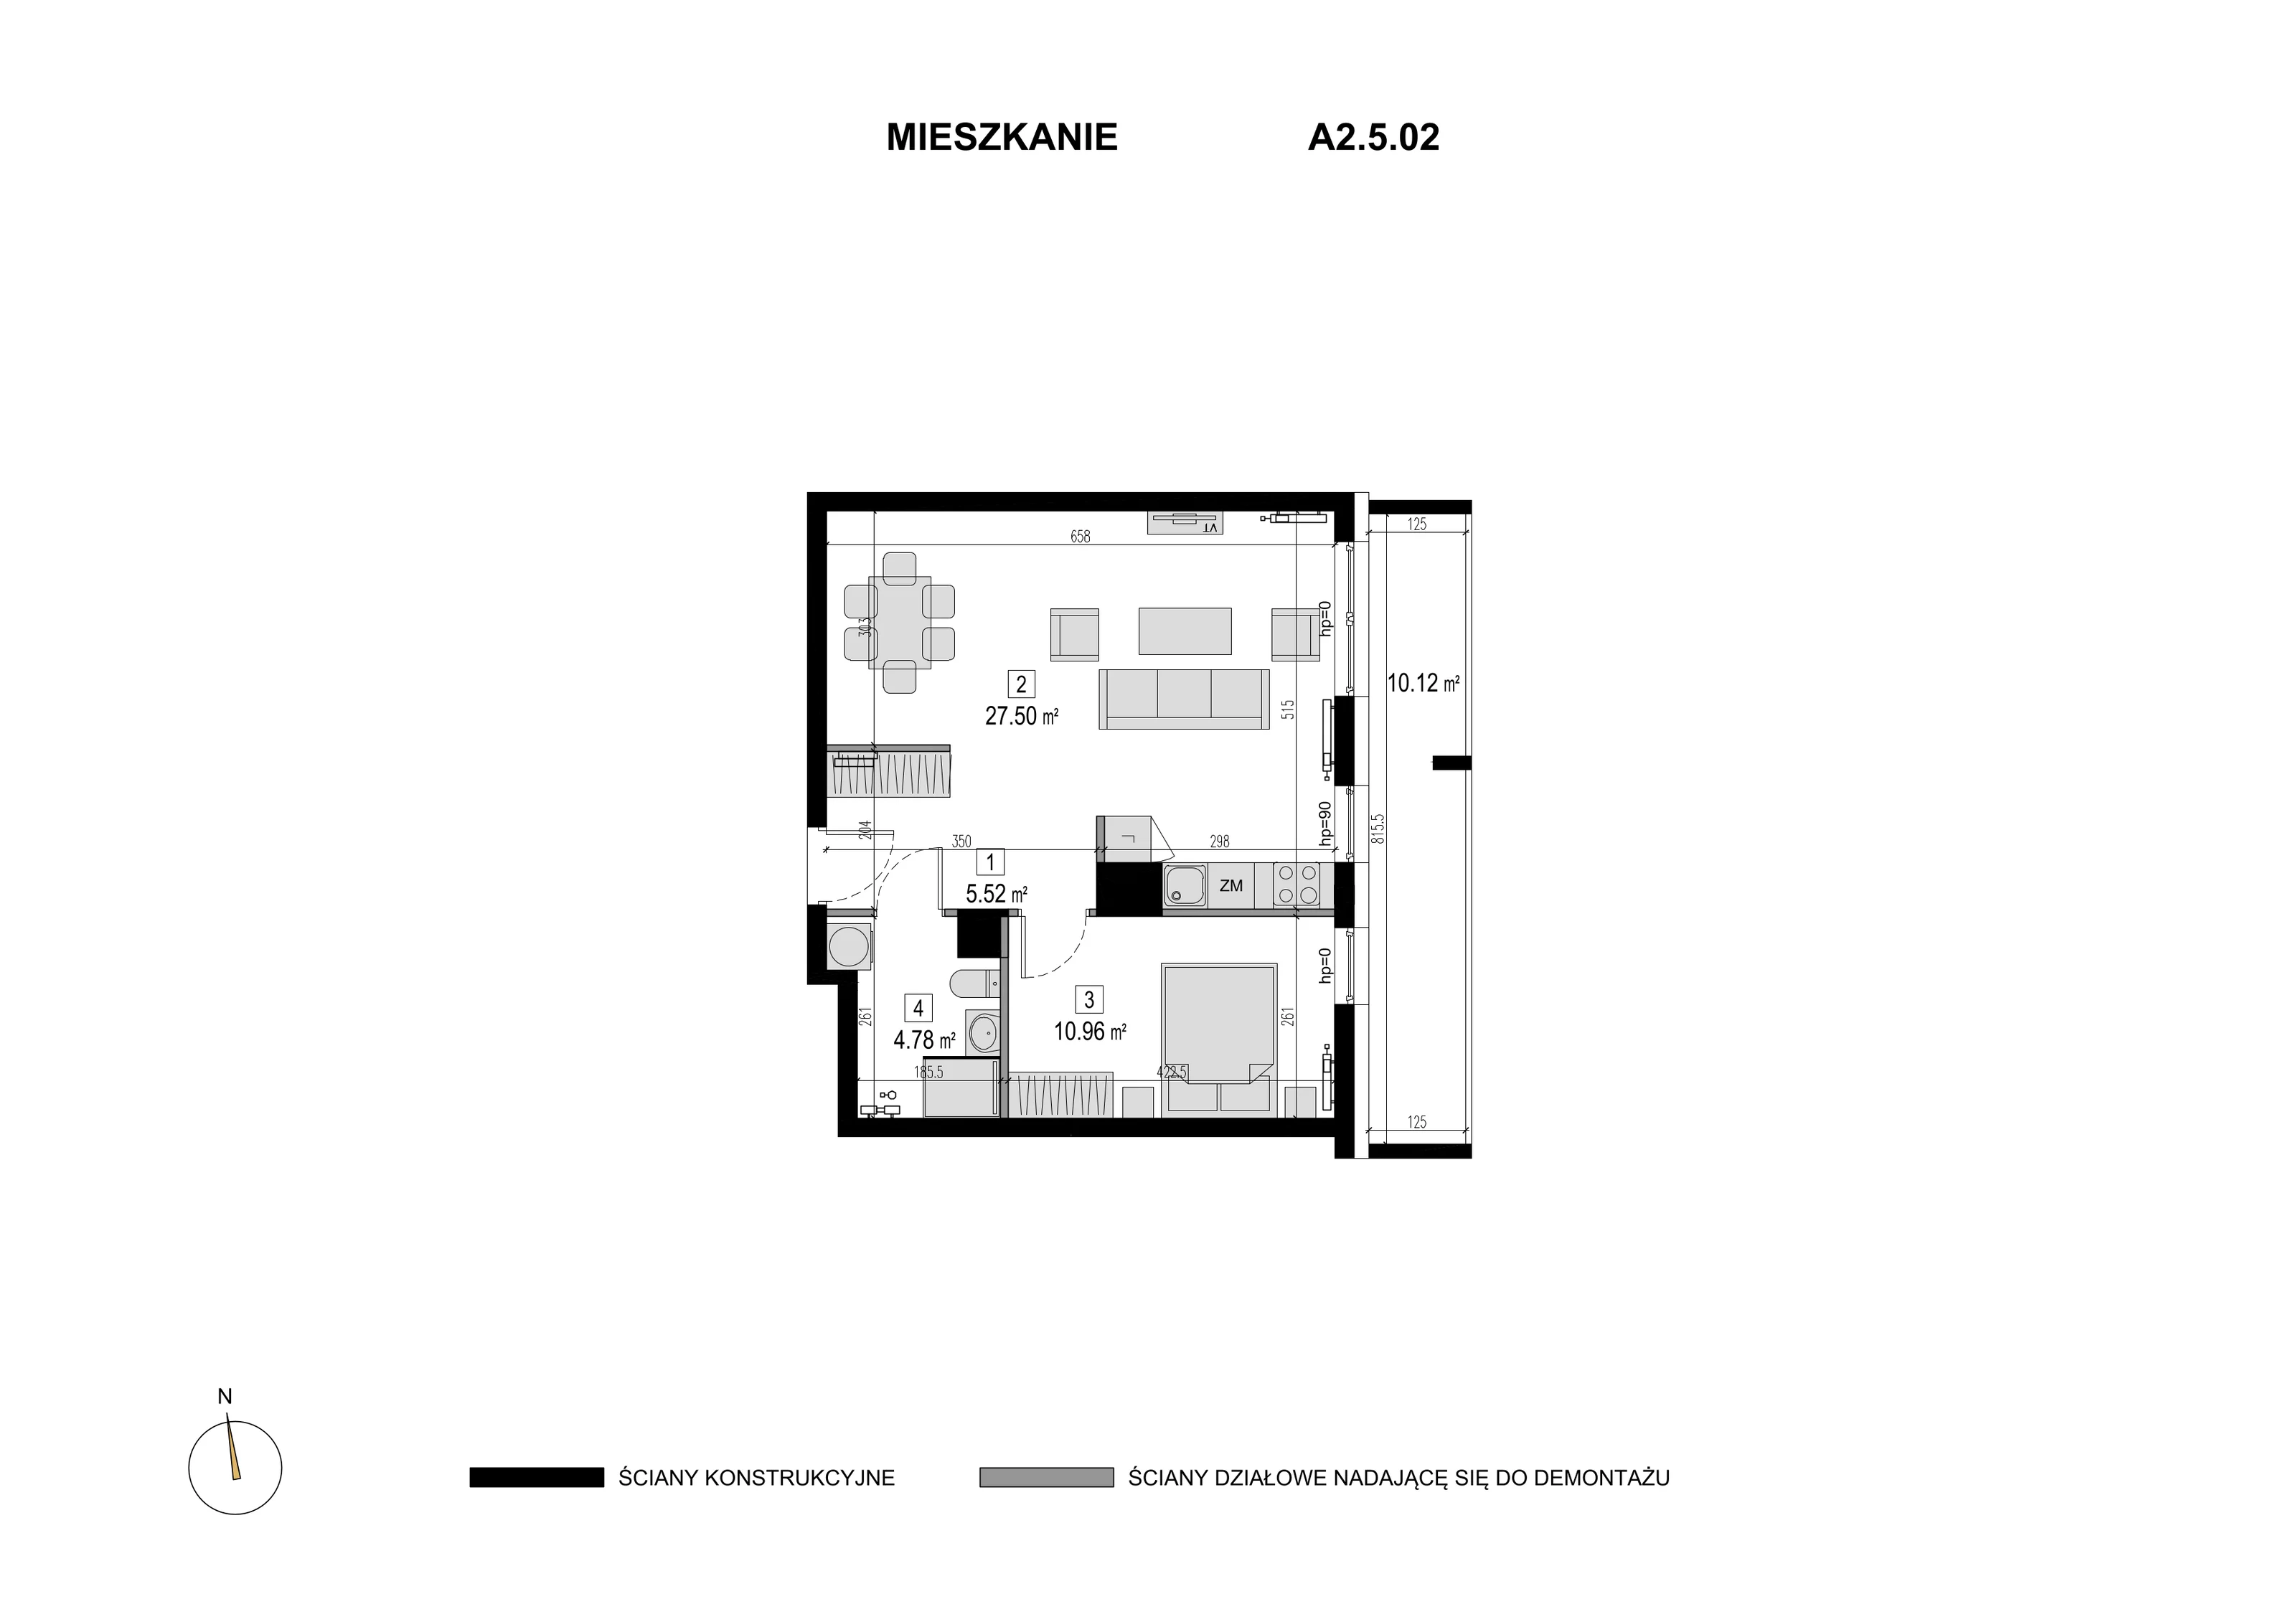 Mieszkanie 48,76 m², piętro 4, oferta nr A2.5.02, Novaforma, Legnica, ul. Chojnowska